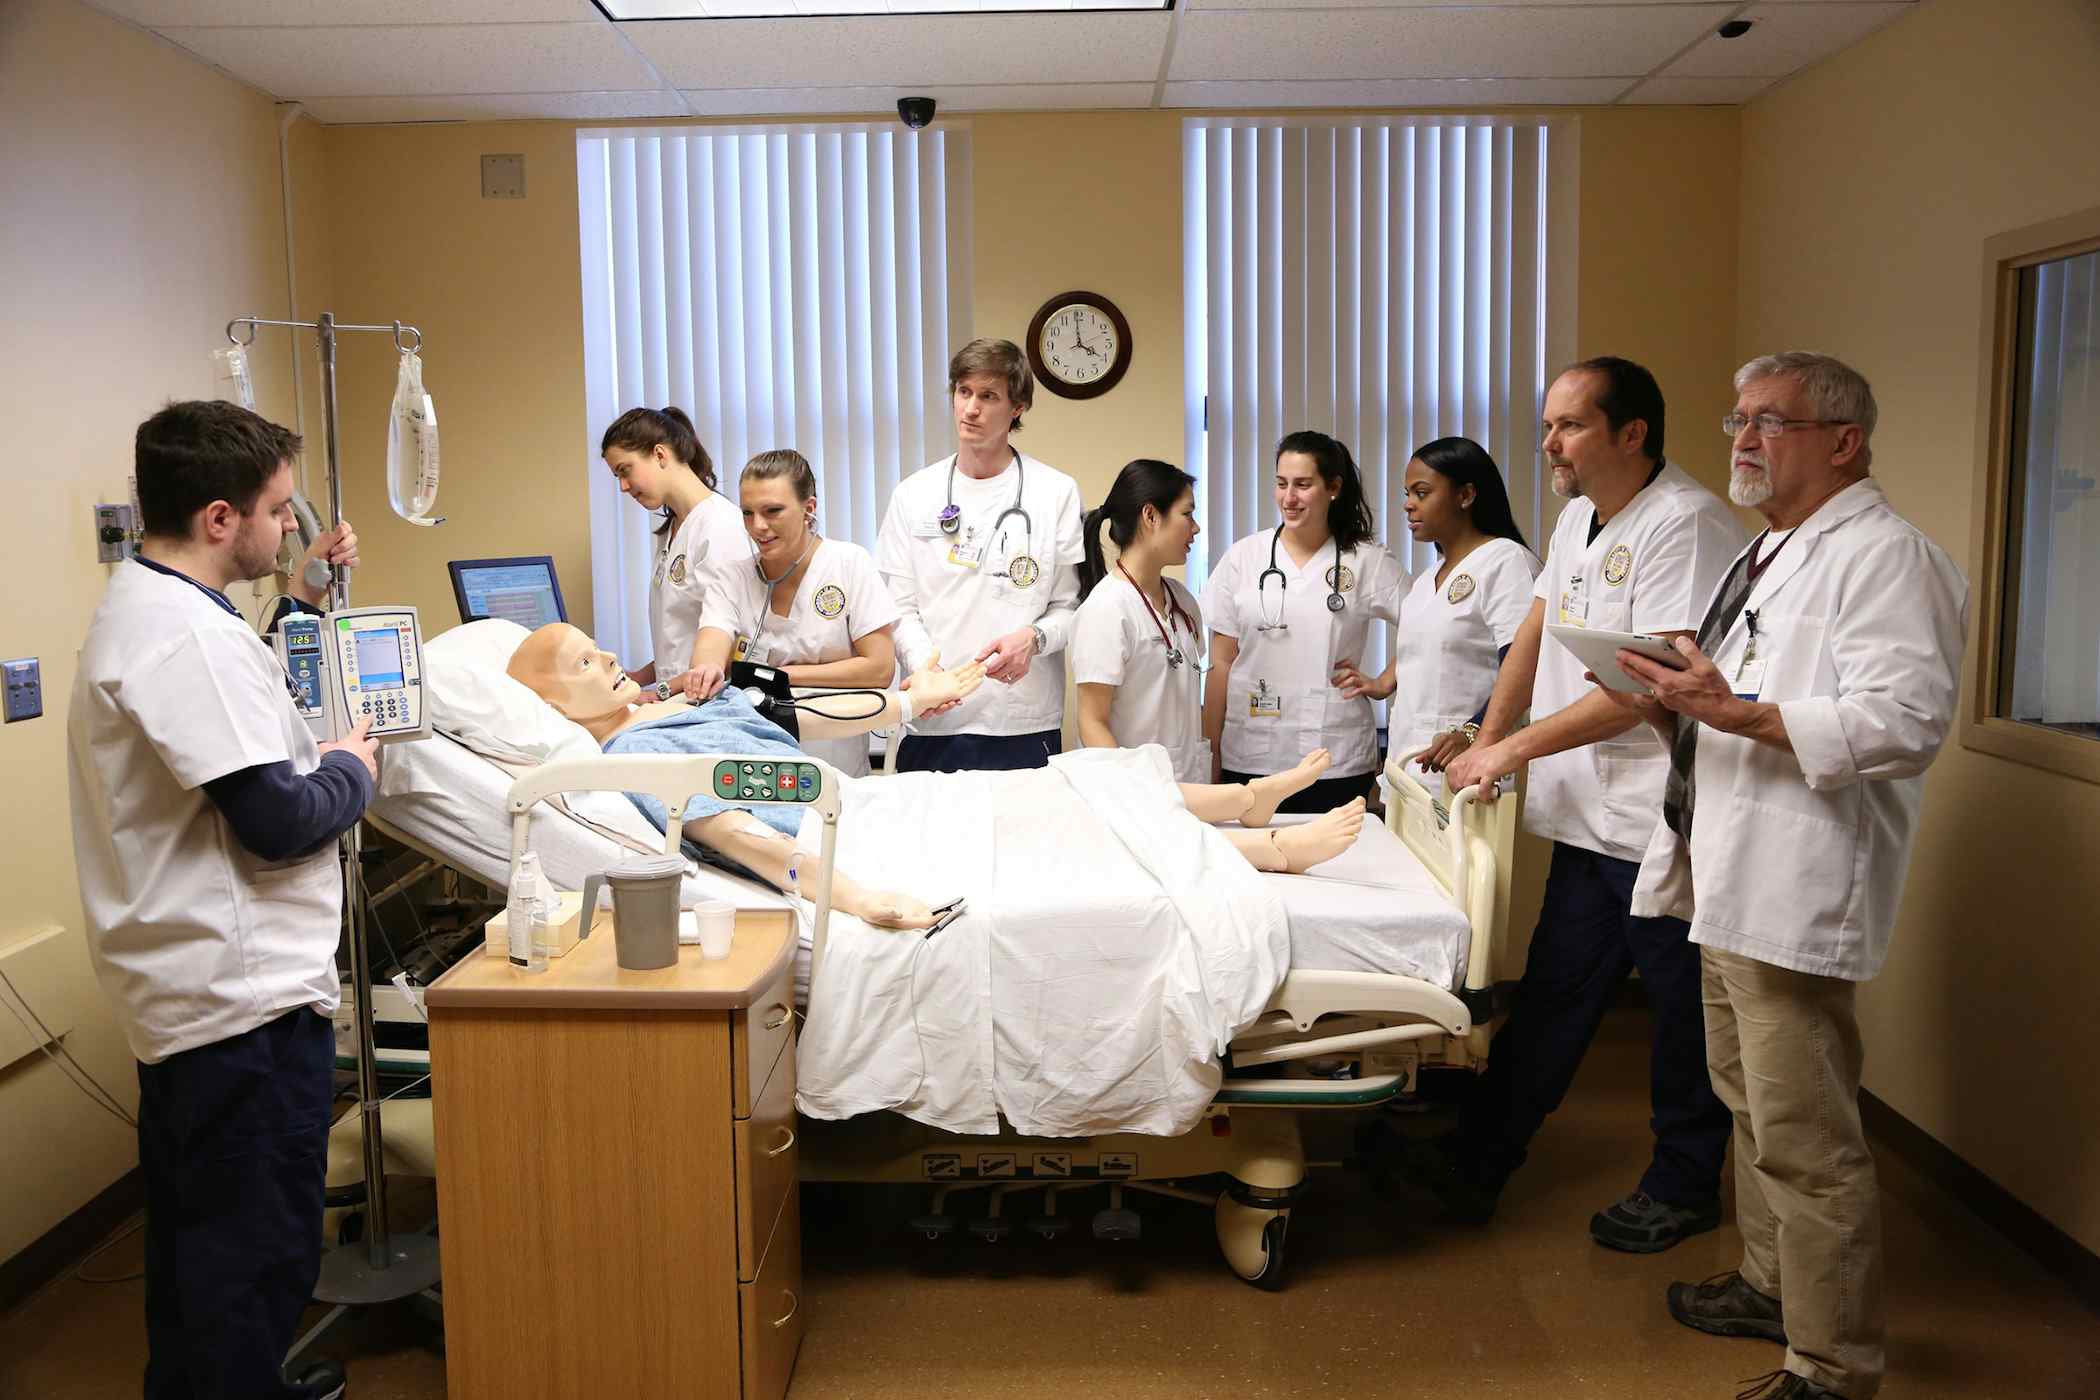 Accelerated Bachelor's Program for Non-Nurses | University of Rochester  School of Nursing